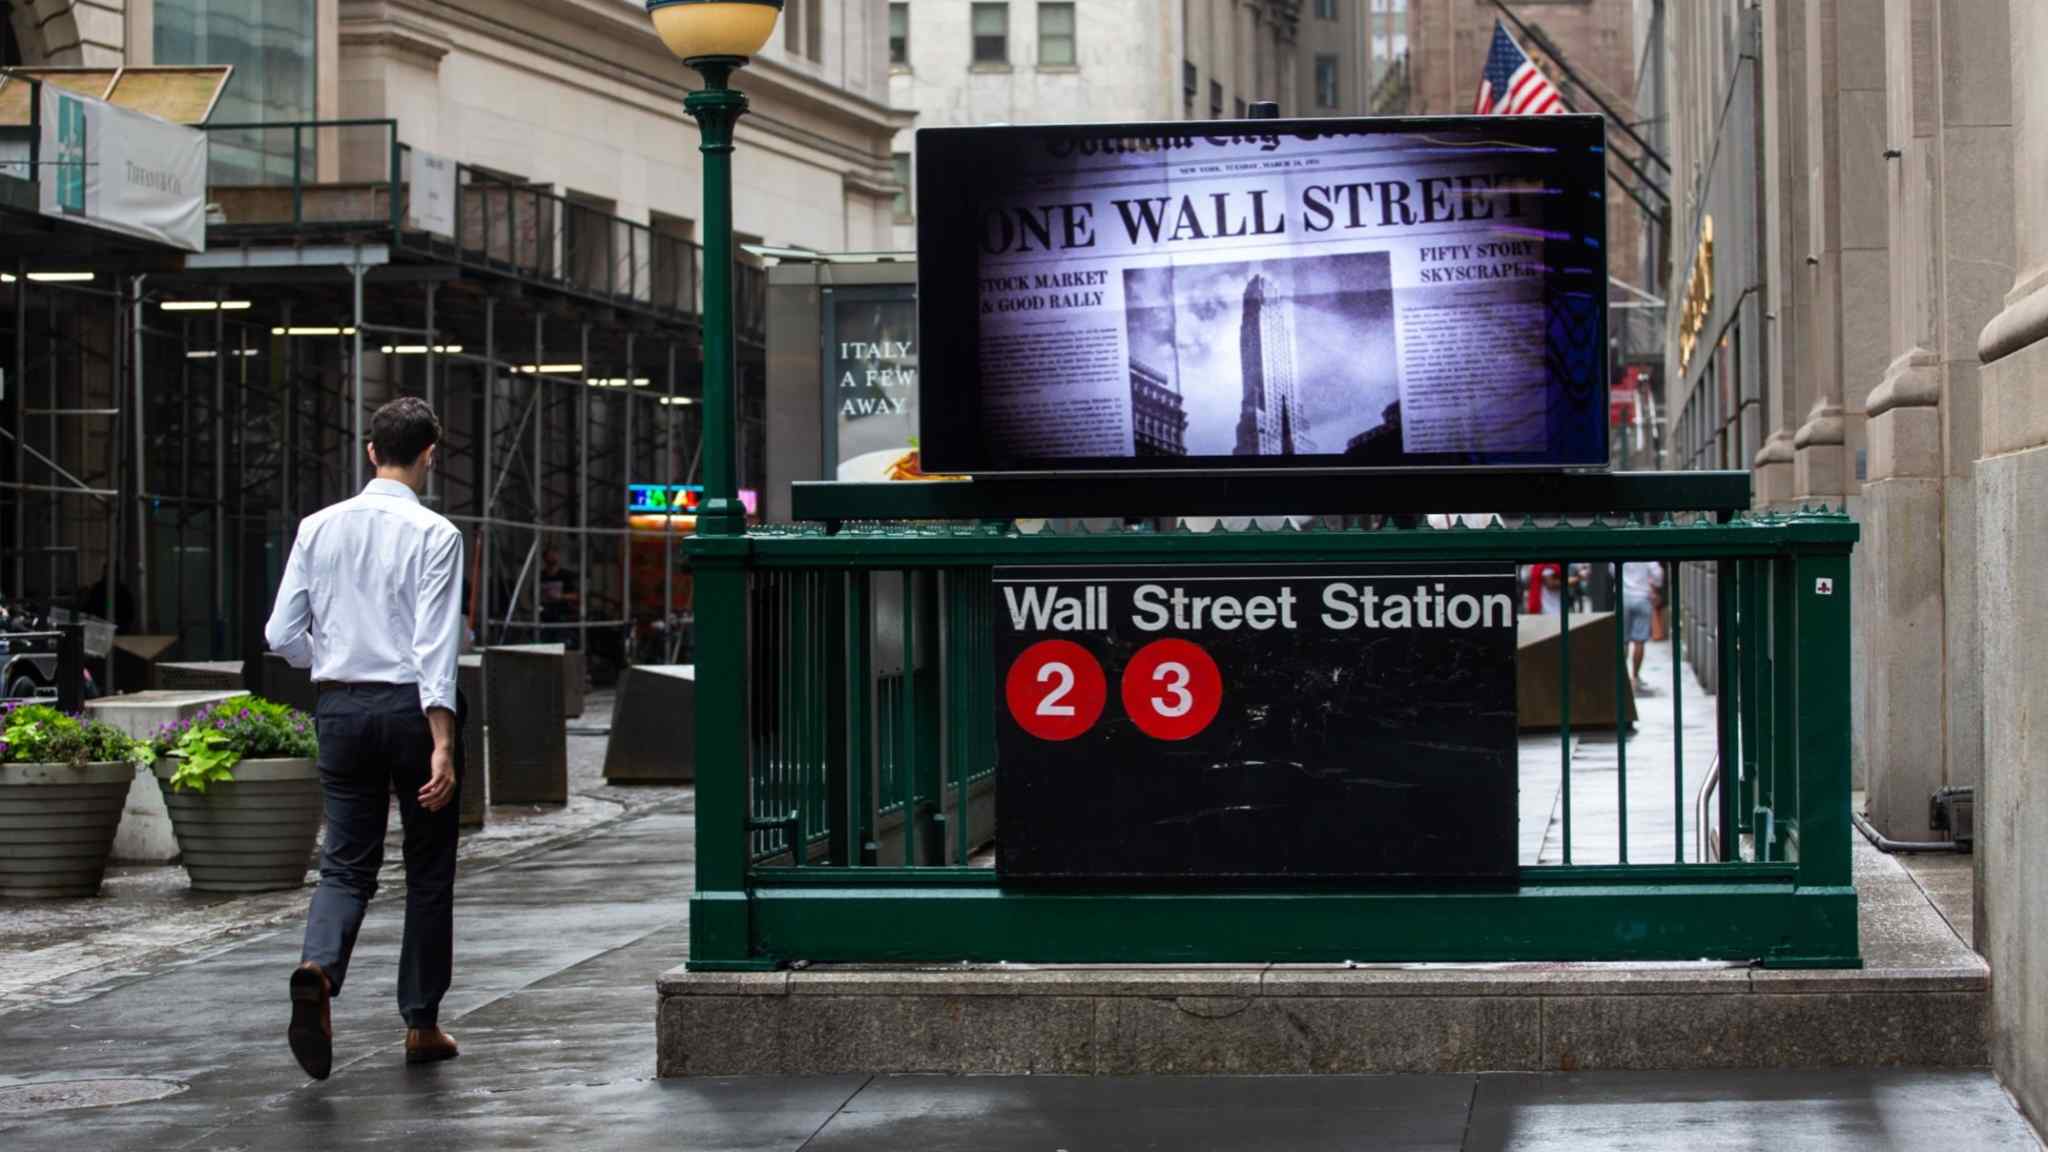 Wall Street bonuses tumbled 26% last year amid dealmaking slump